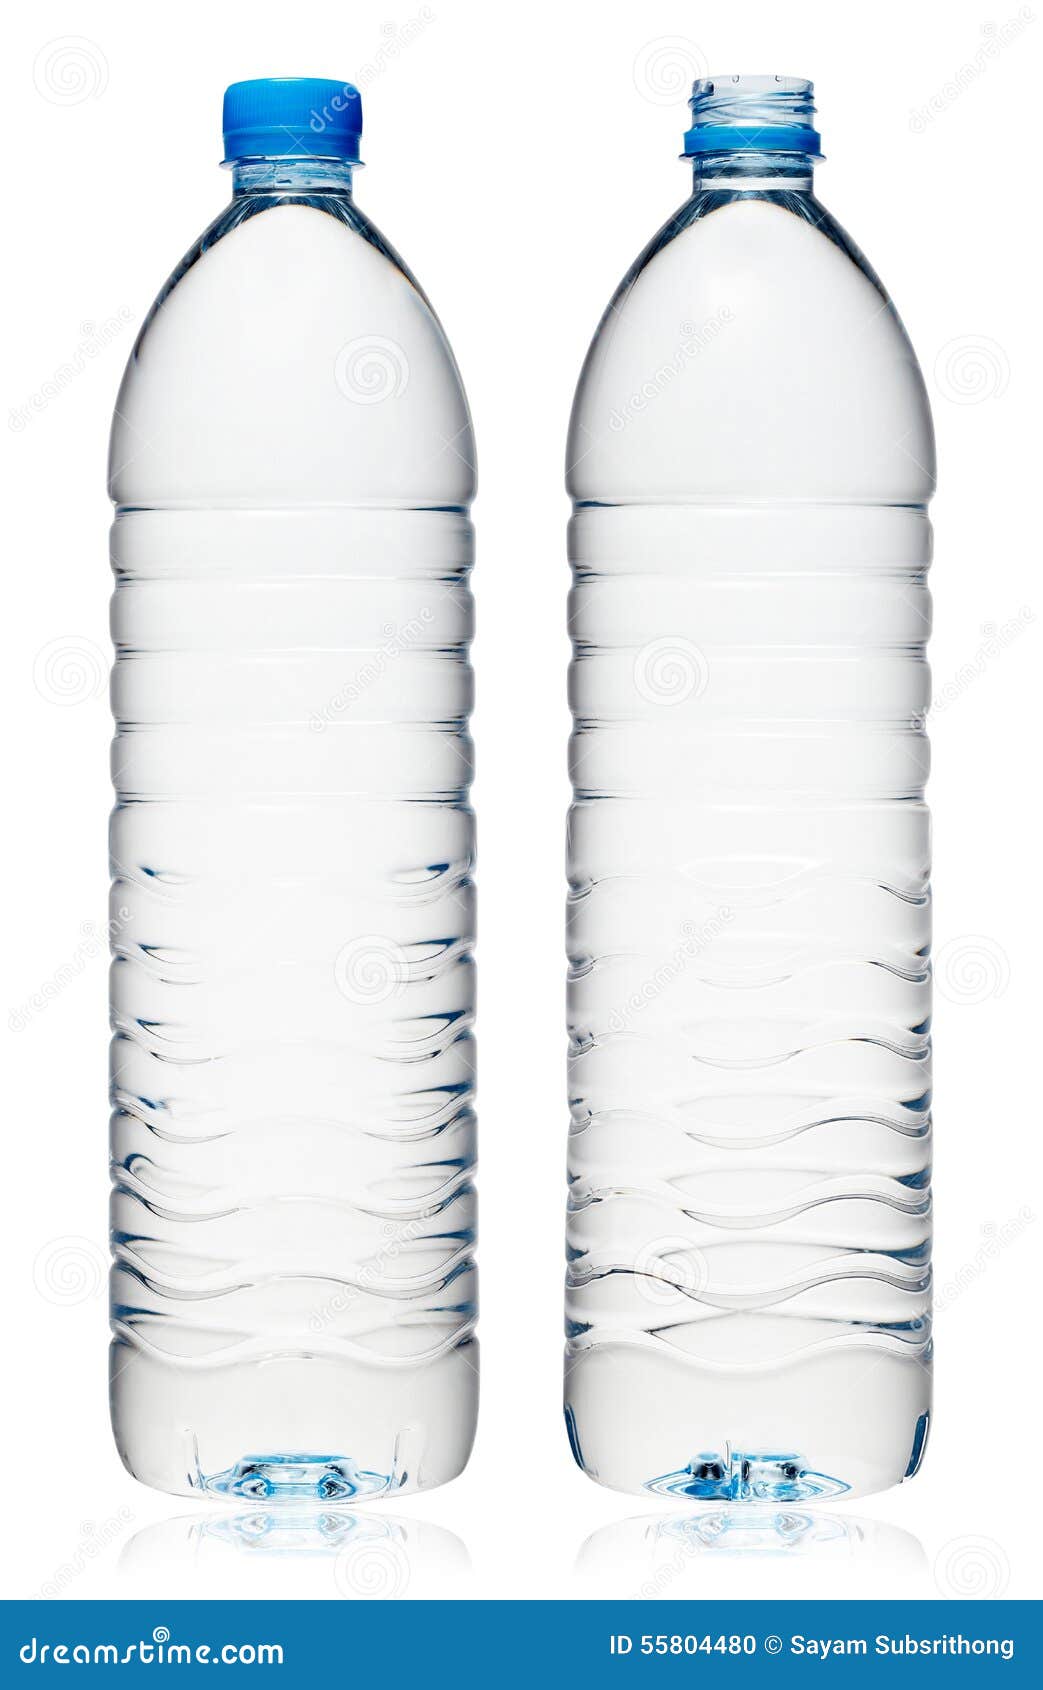  Bouteille  D eau En Plastique  Photo stock Image  du 